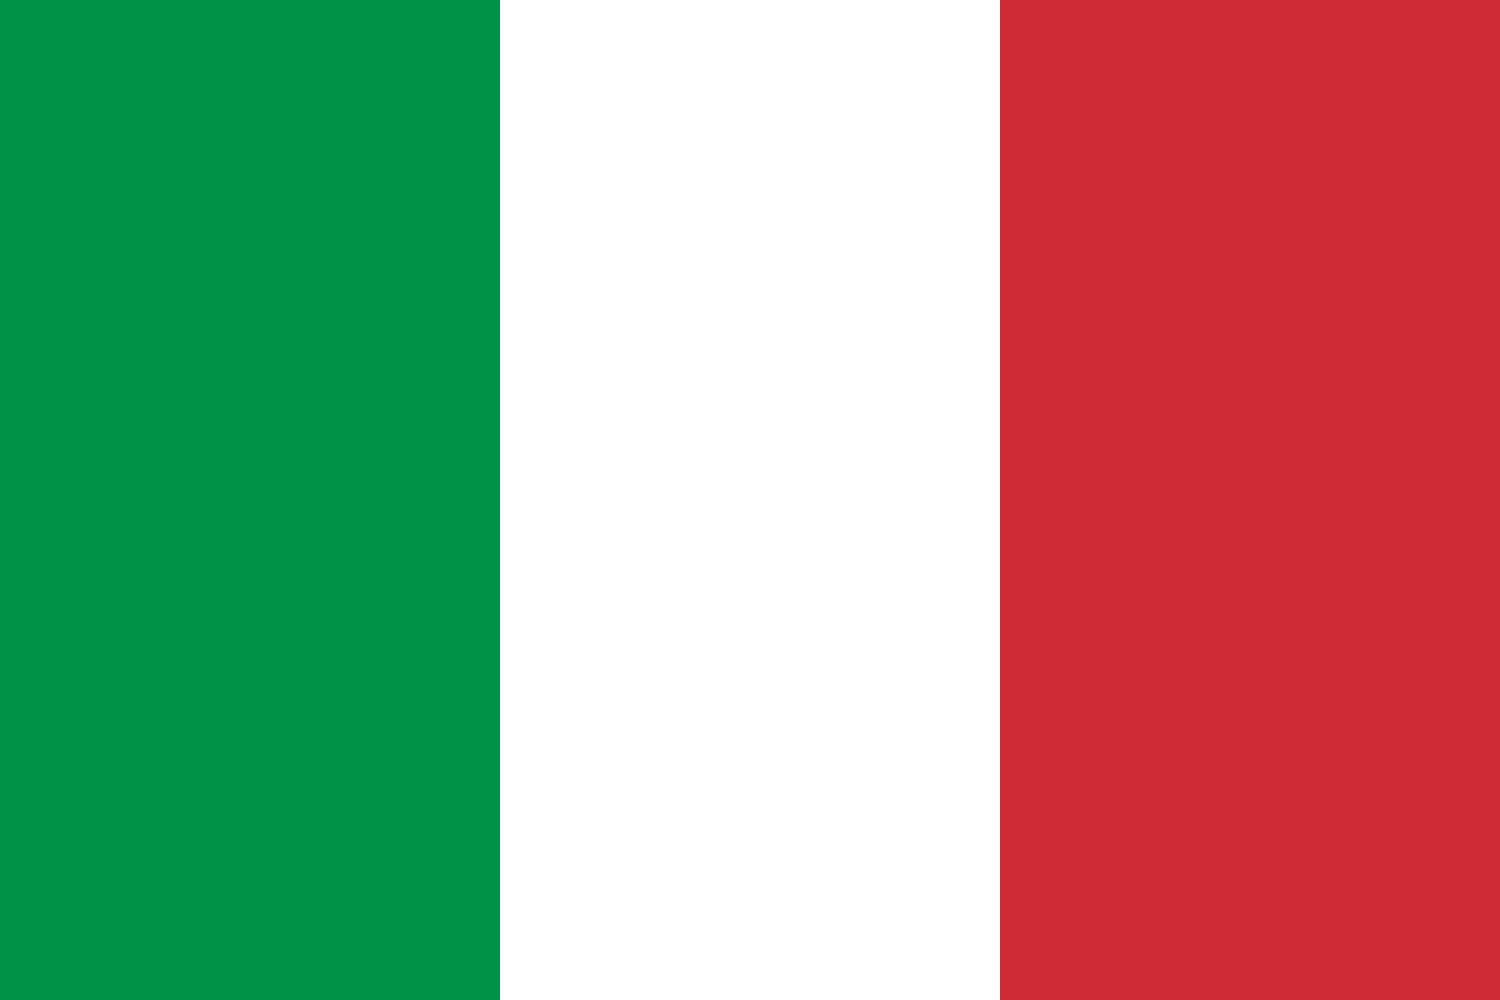 意大利 logo